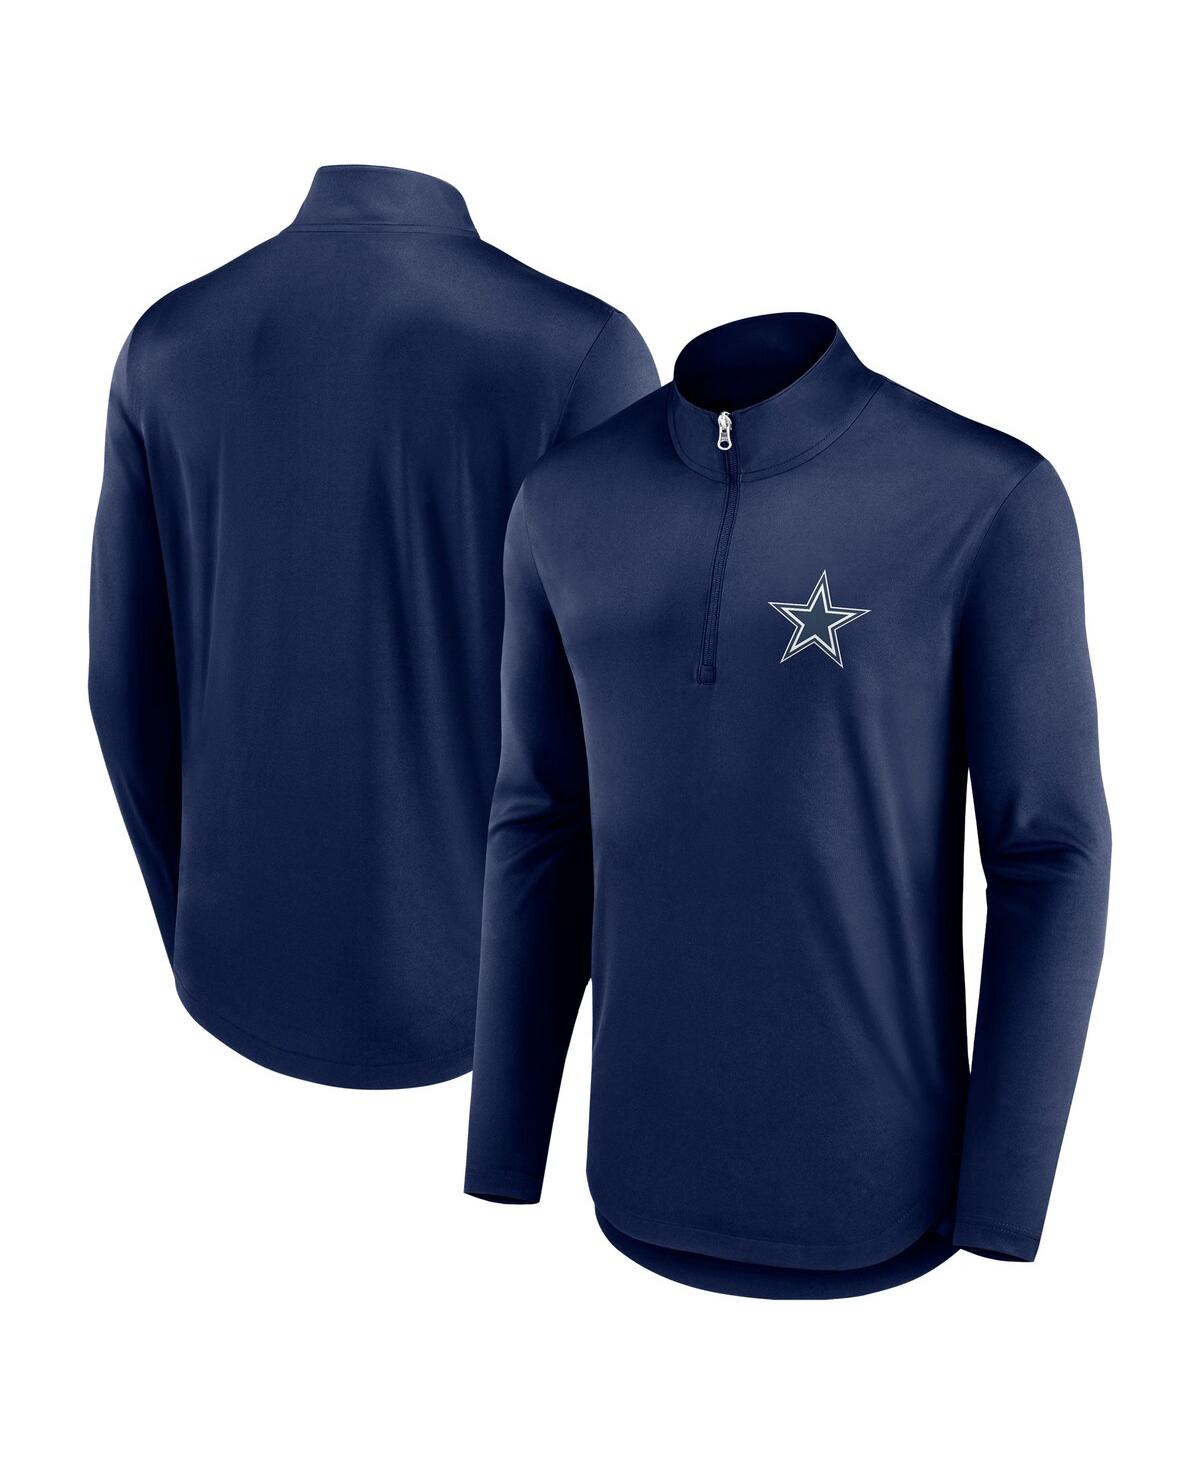 Shop Fanatics Men's  Navy Dallas Cowboys Quarterback Quarter-zip Top